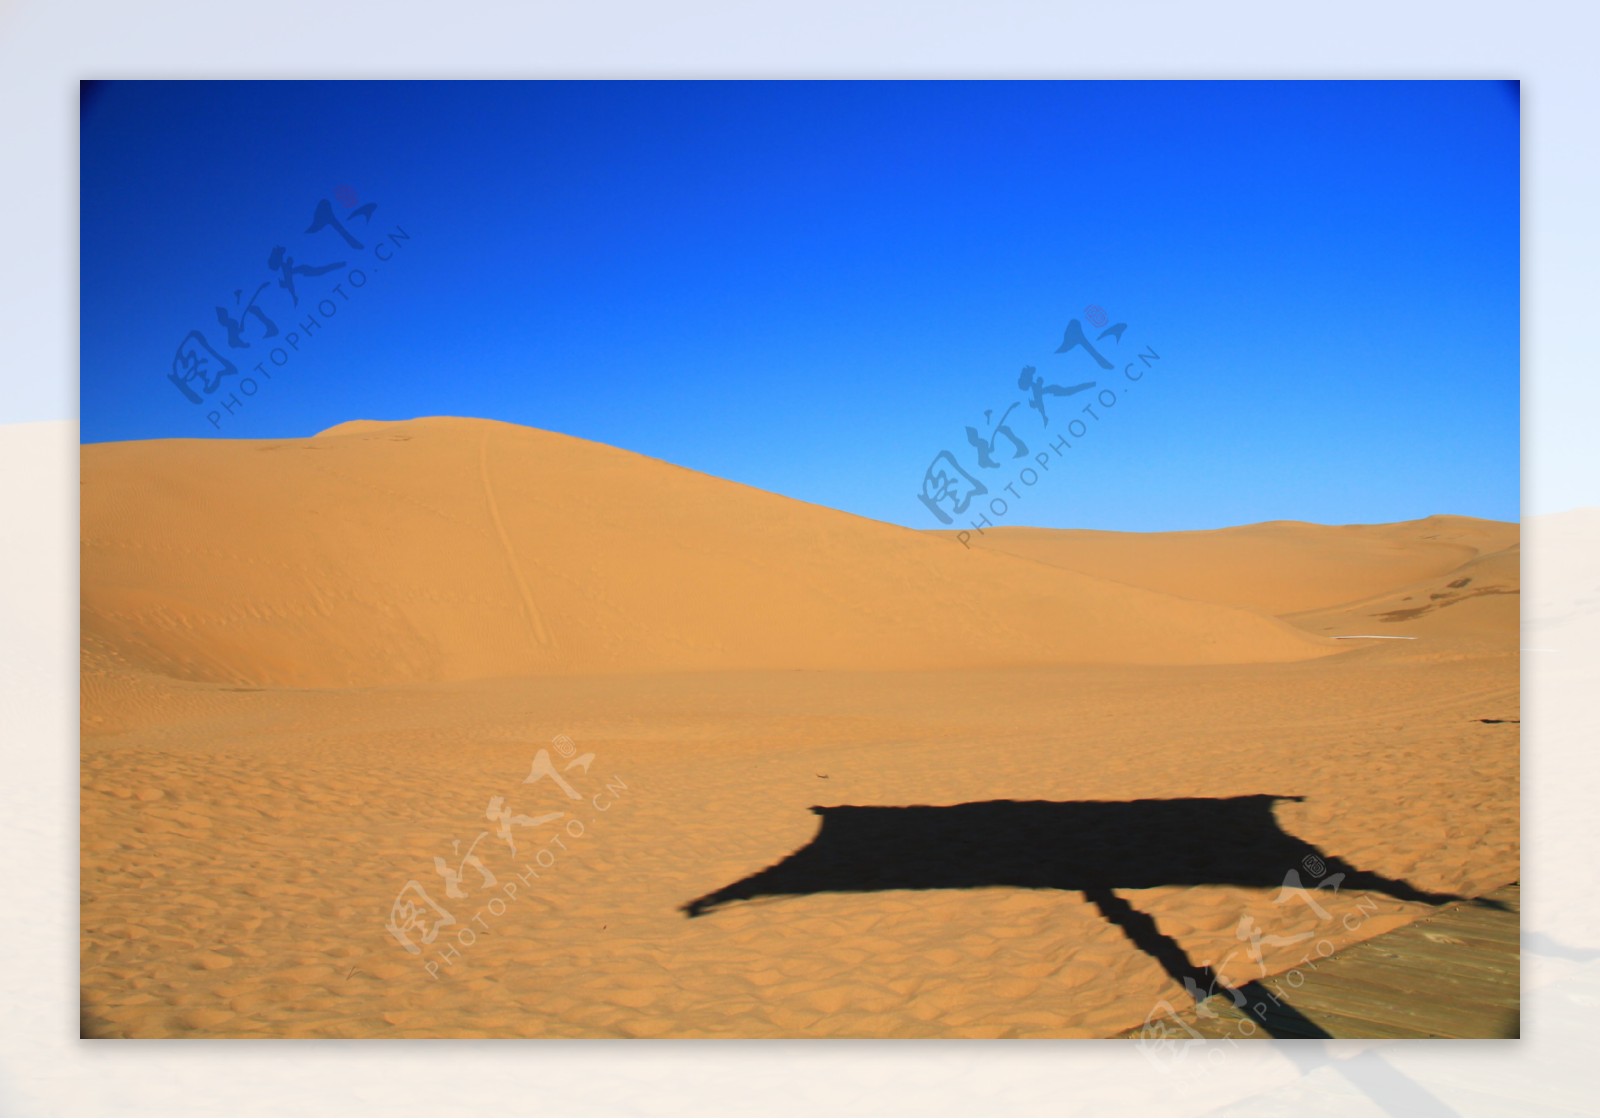 沙漠荒漠大漠图片